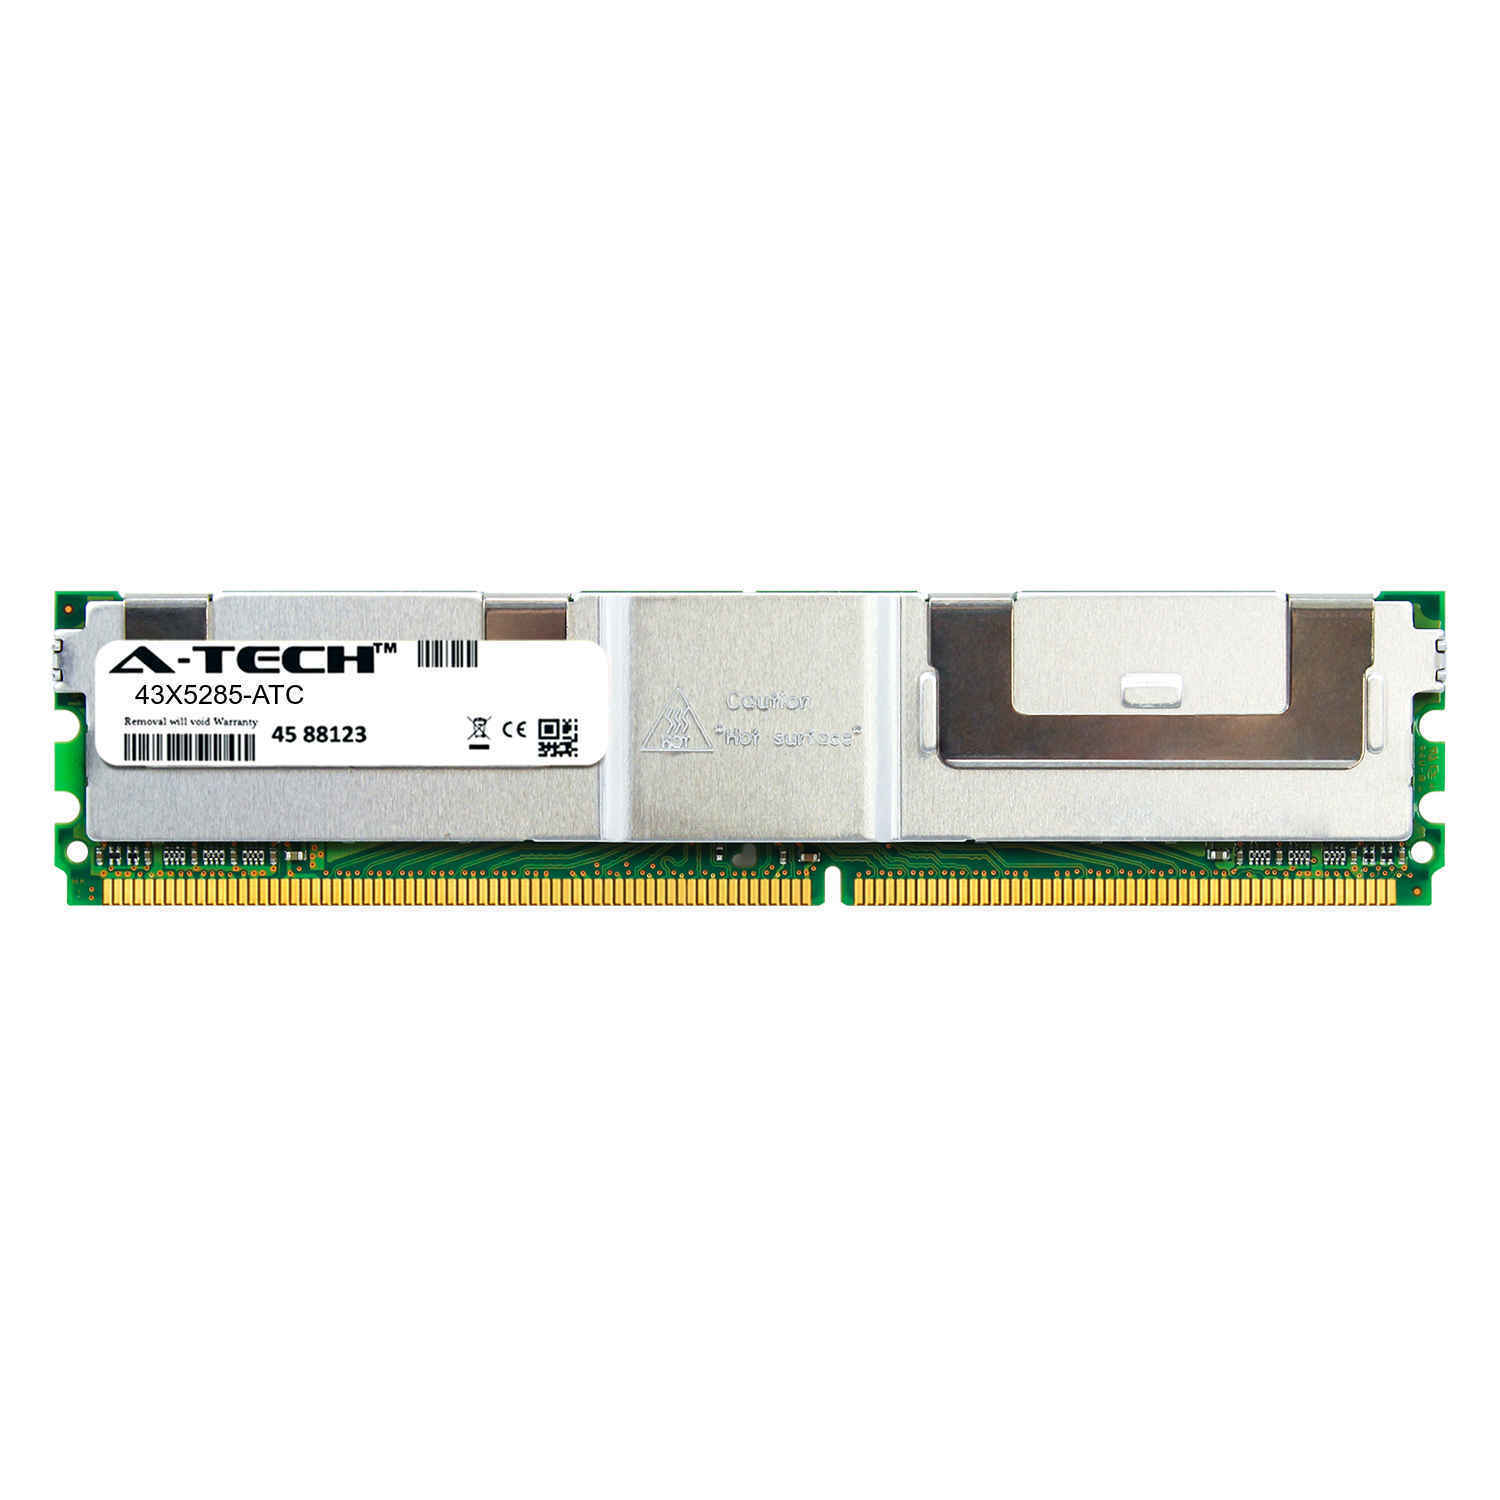 8GB DDR2 PC2-5300F 667MHz FBDIMM (IBM 43X5285 Equivalent) Server Memory RAM